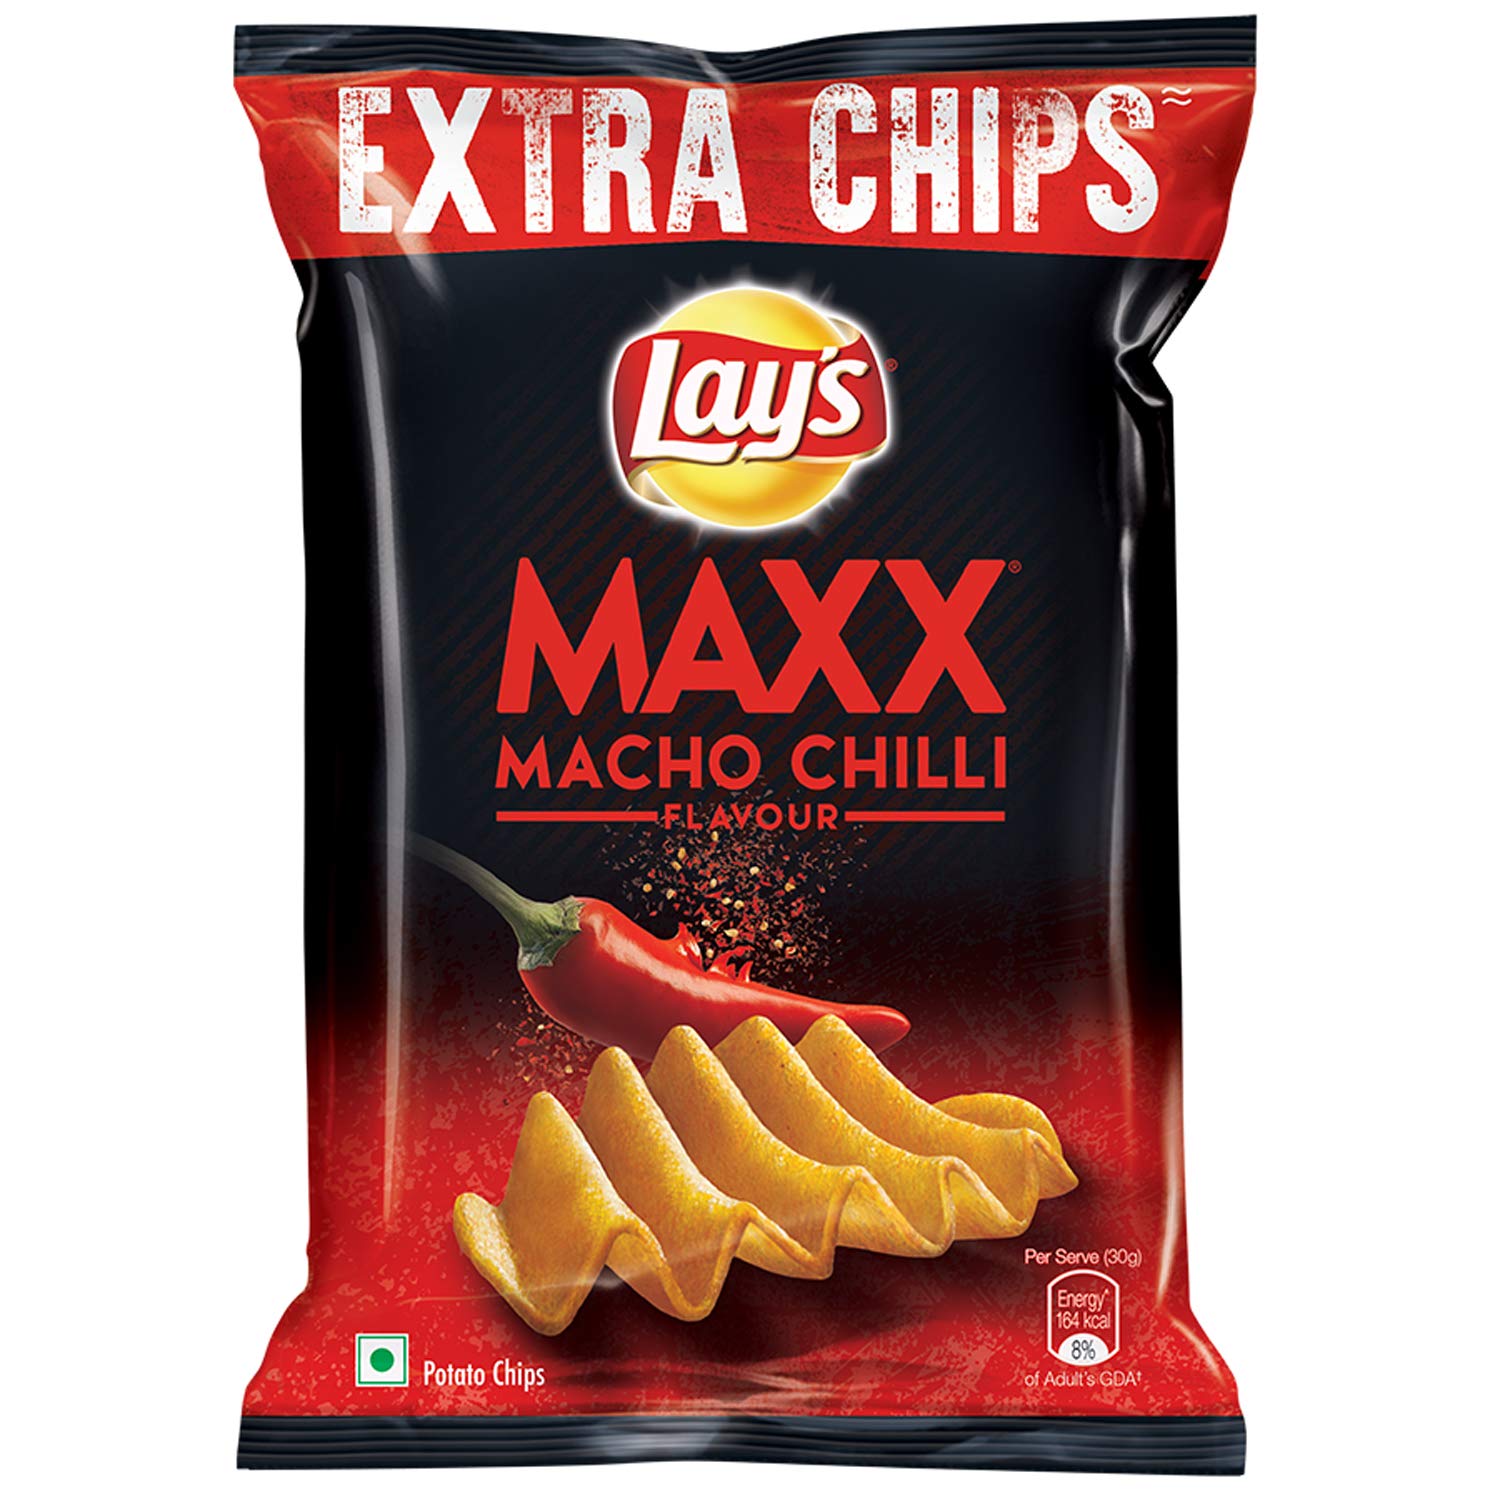 Lay's Maxx Macho Chilli Flavour Image